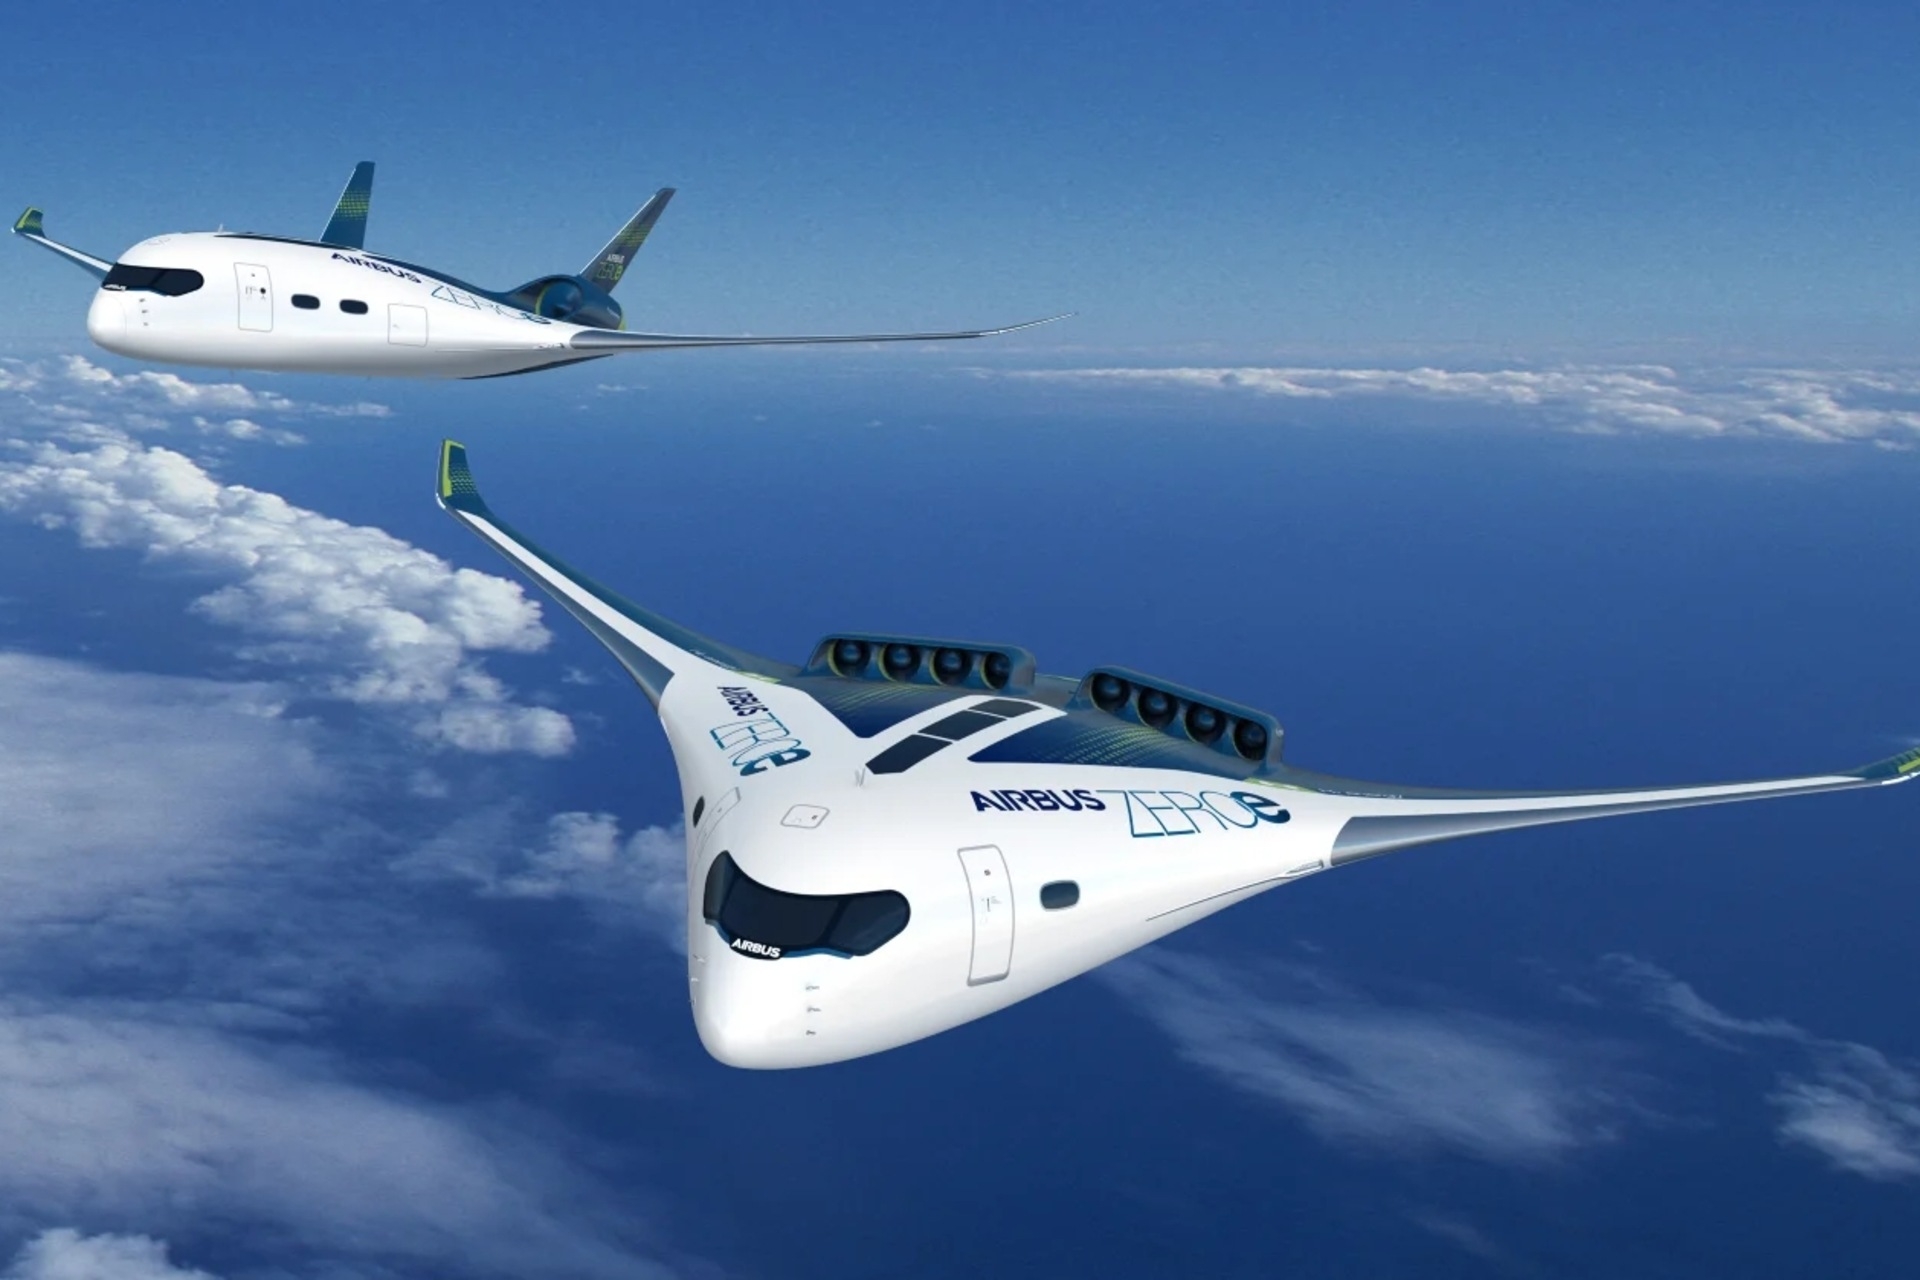 Шум: праект ZEROe кампаніі Airbus з'яўляецца адным з самалётаў са змешаным крылом, прапанаваных у апошнія гады і прадметам вывучэння